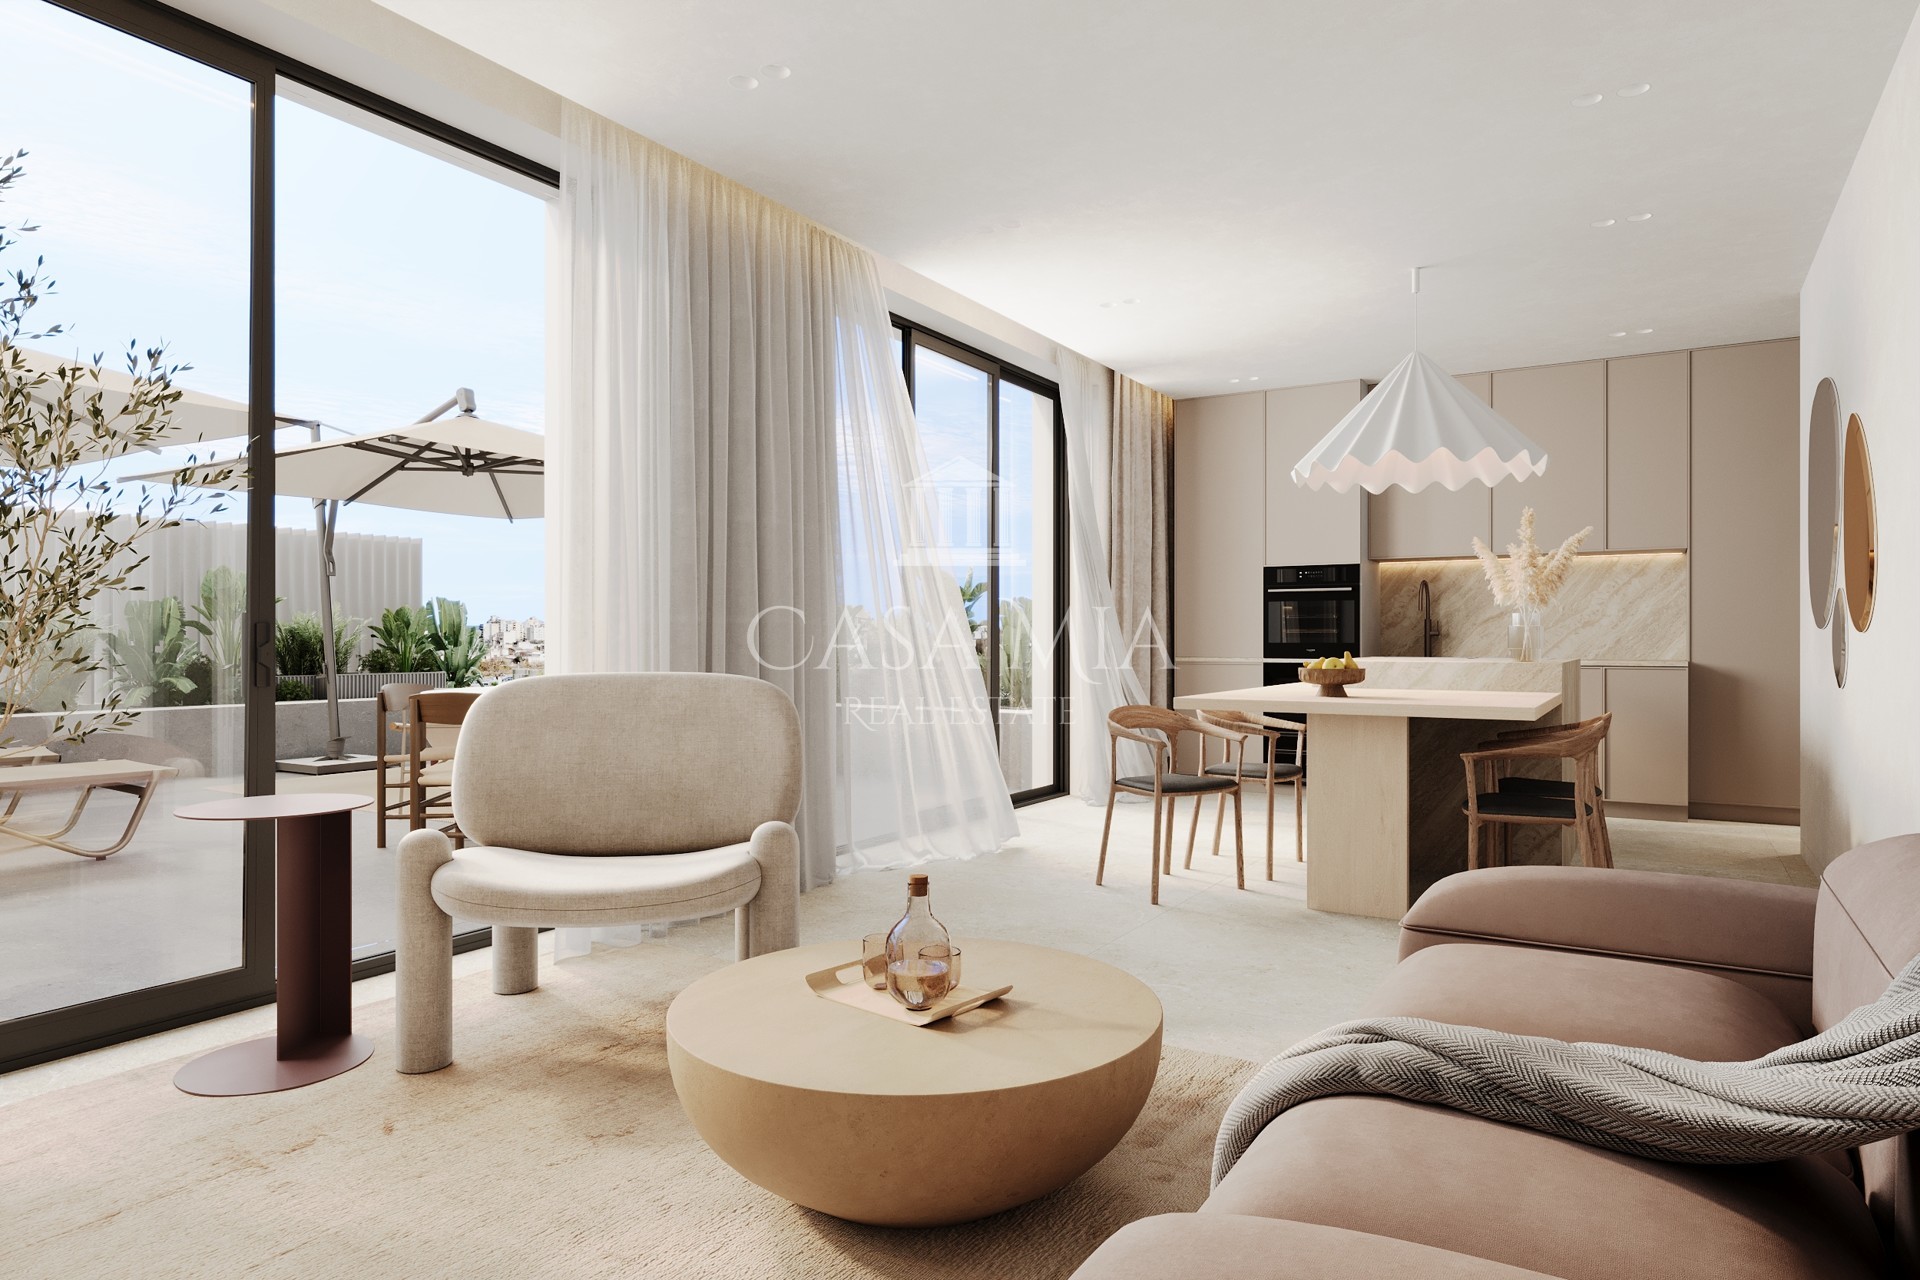 Appartement neuf dans complexe de luxe avec piscine commune, gym & spa, Palma